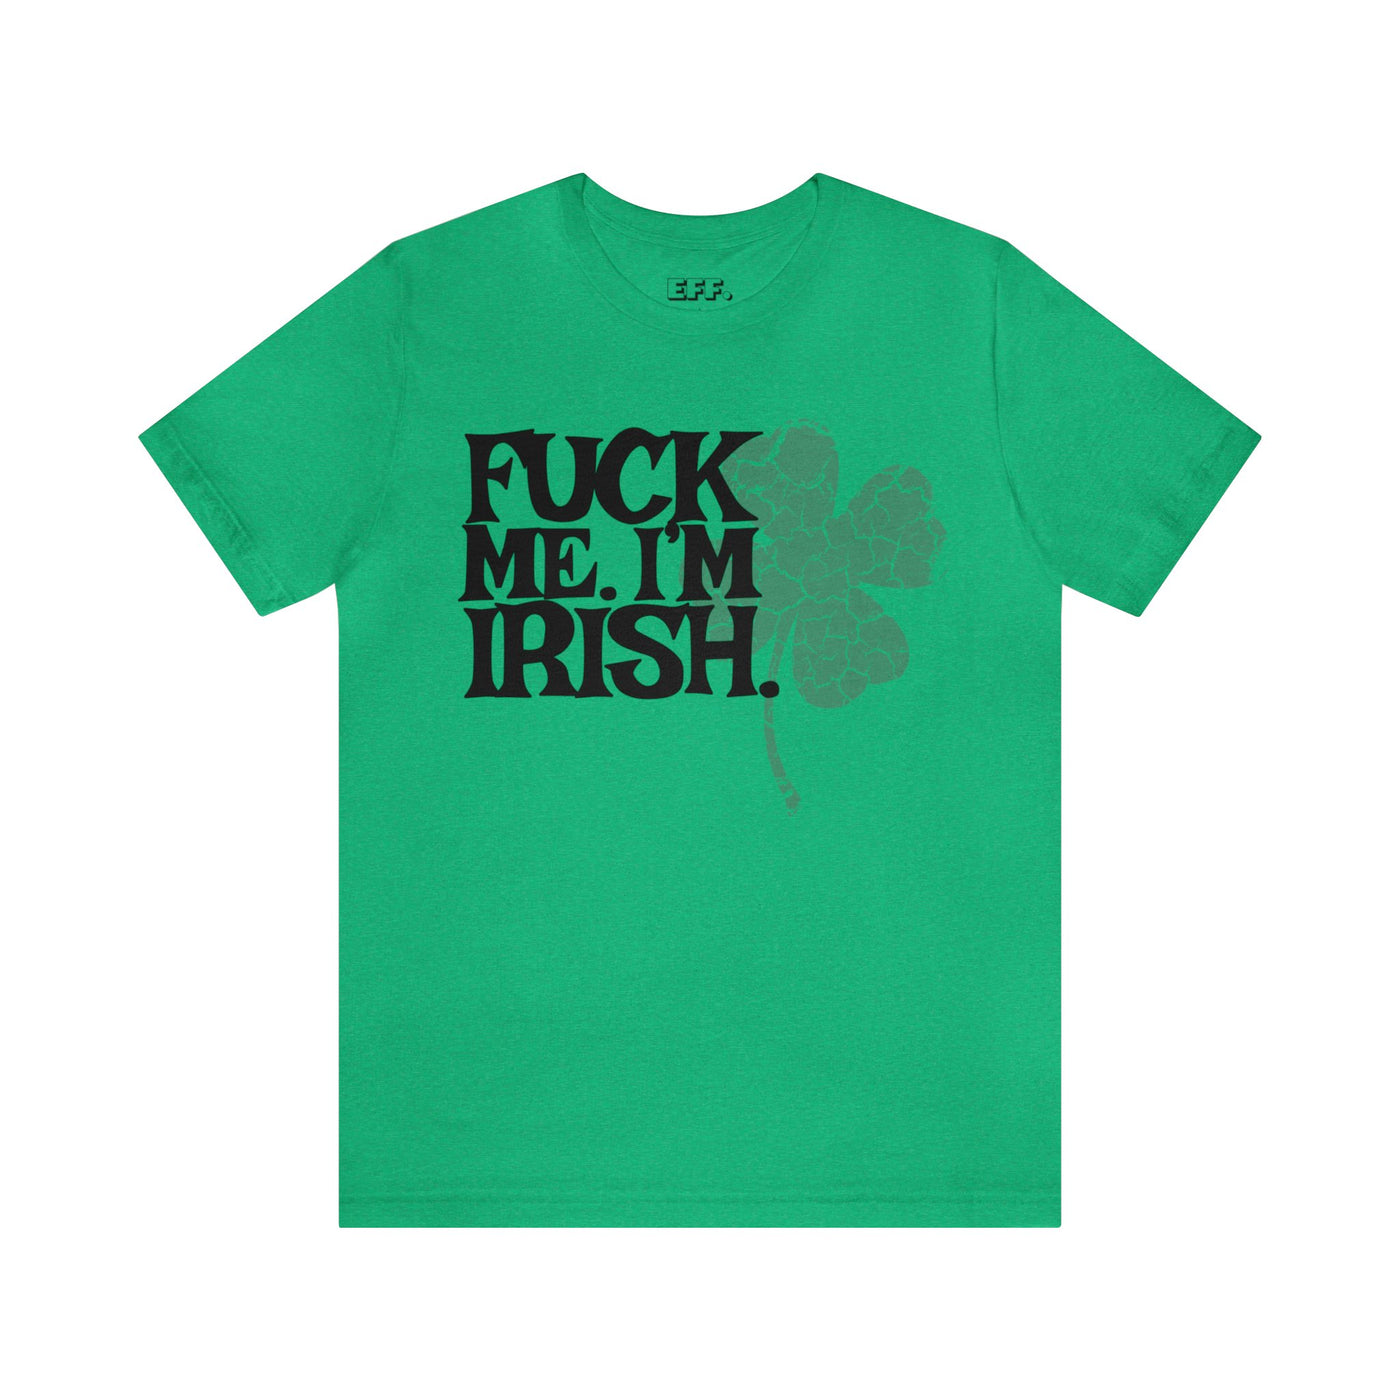 Fuck Me. I'm Irish.